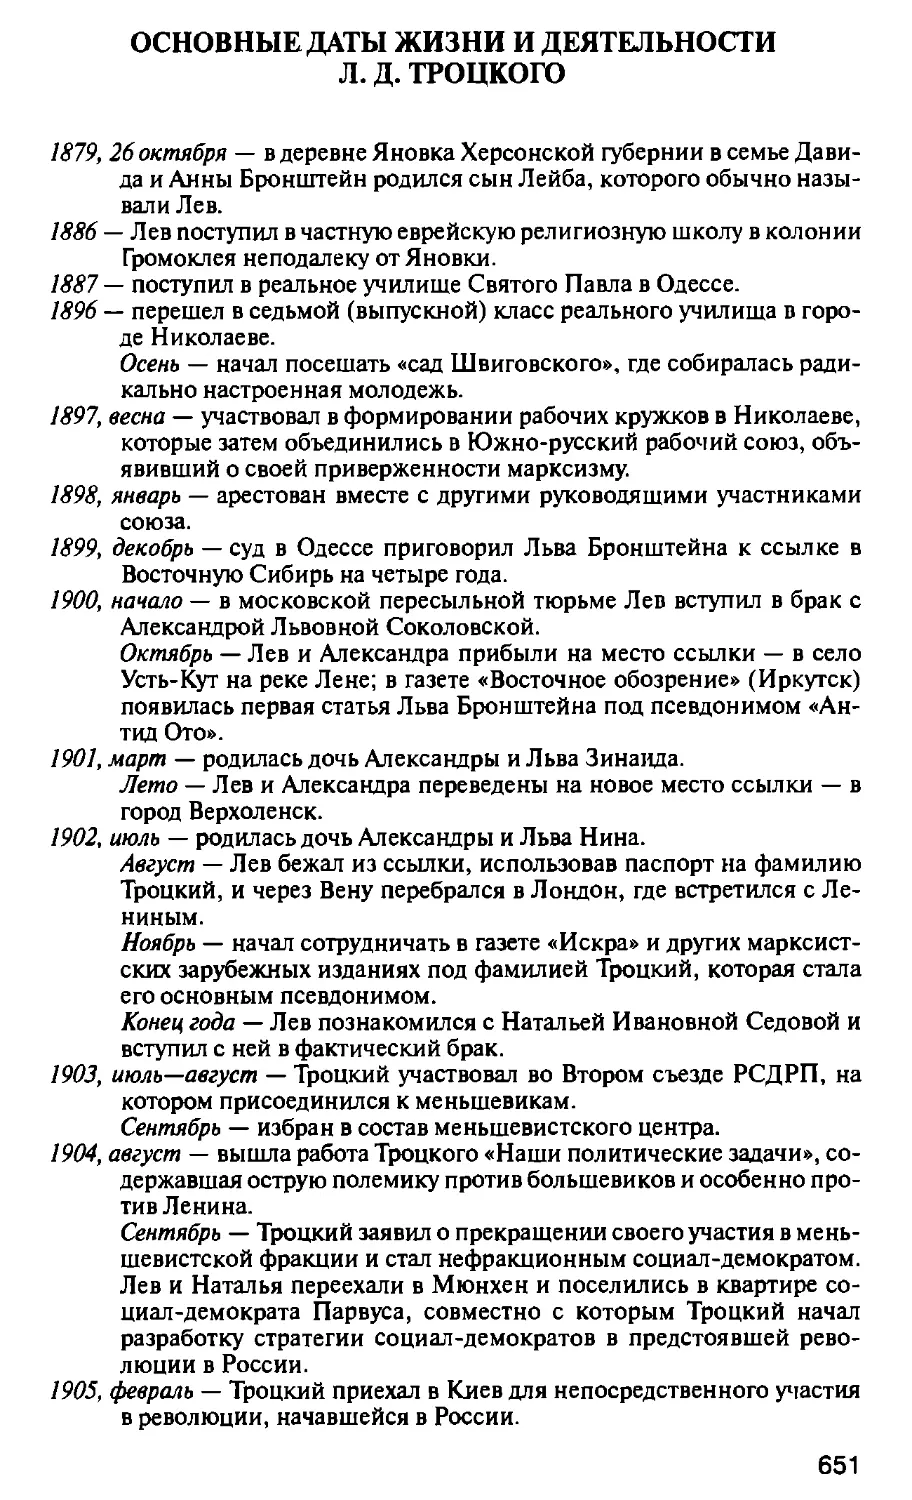 Основные даты жизни и деятельности Л. Д. Троцкого